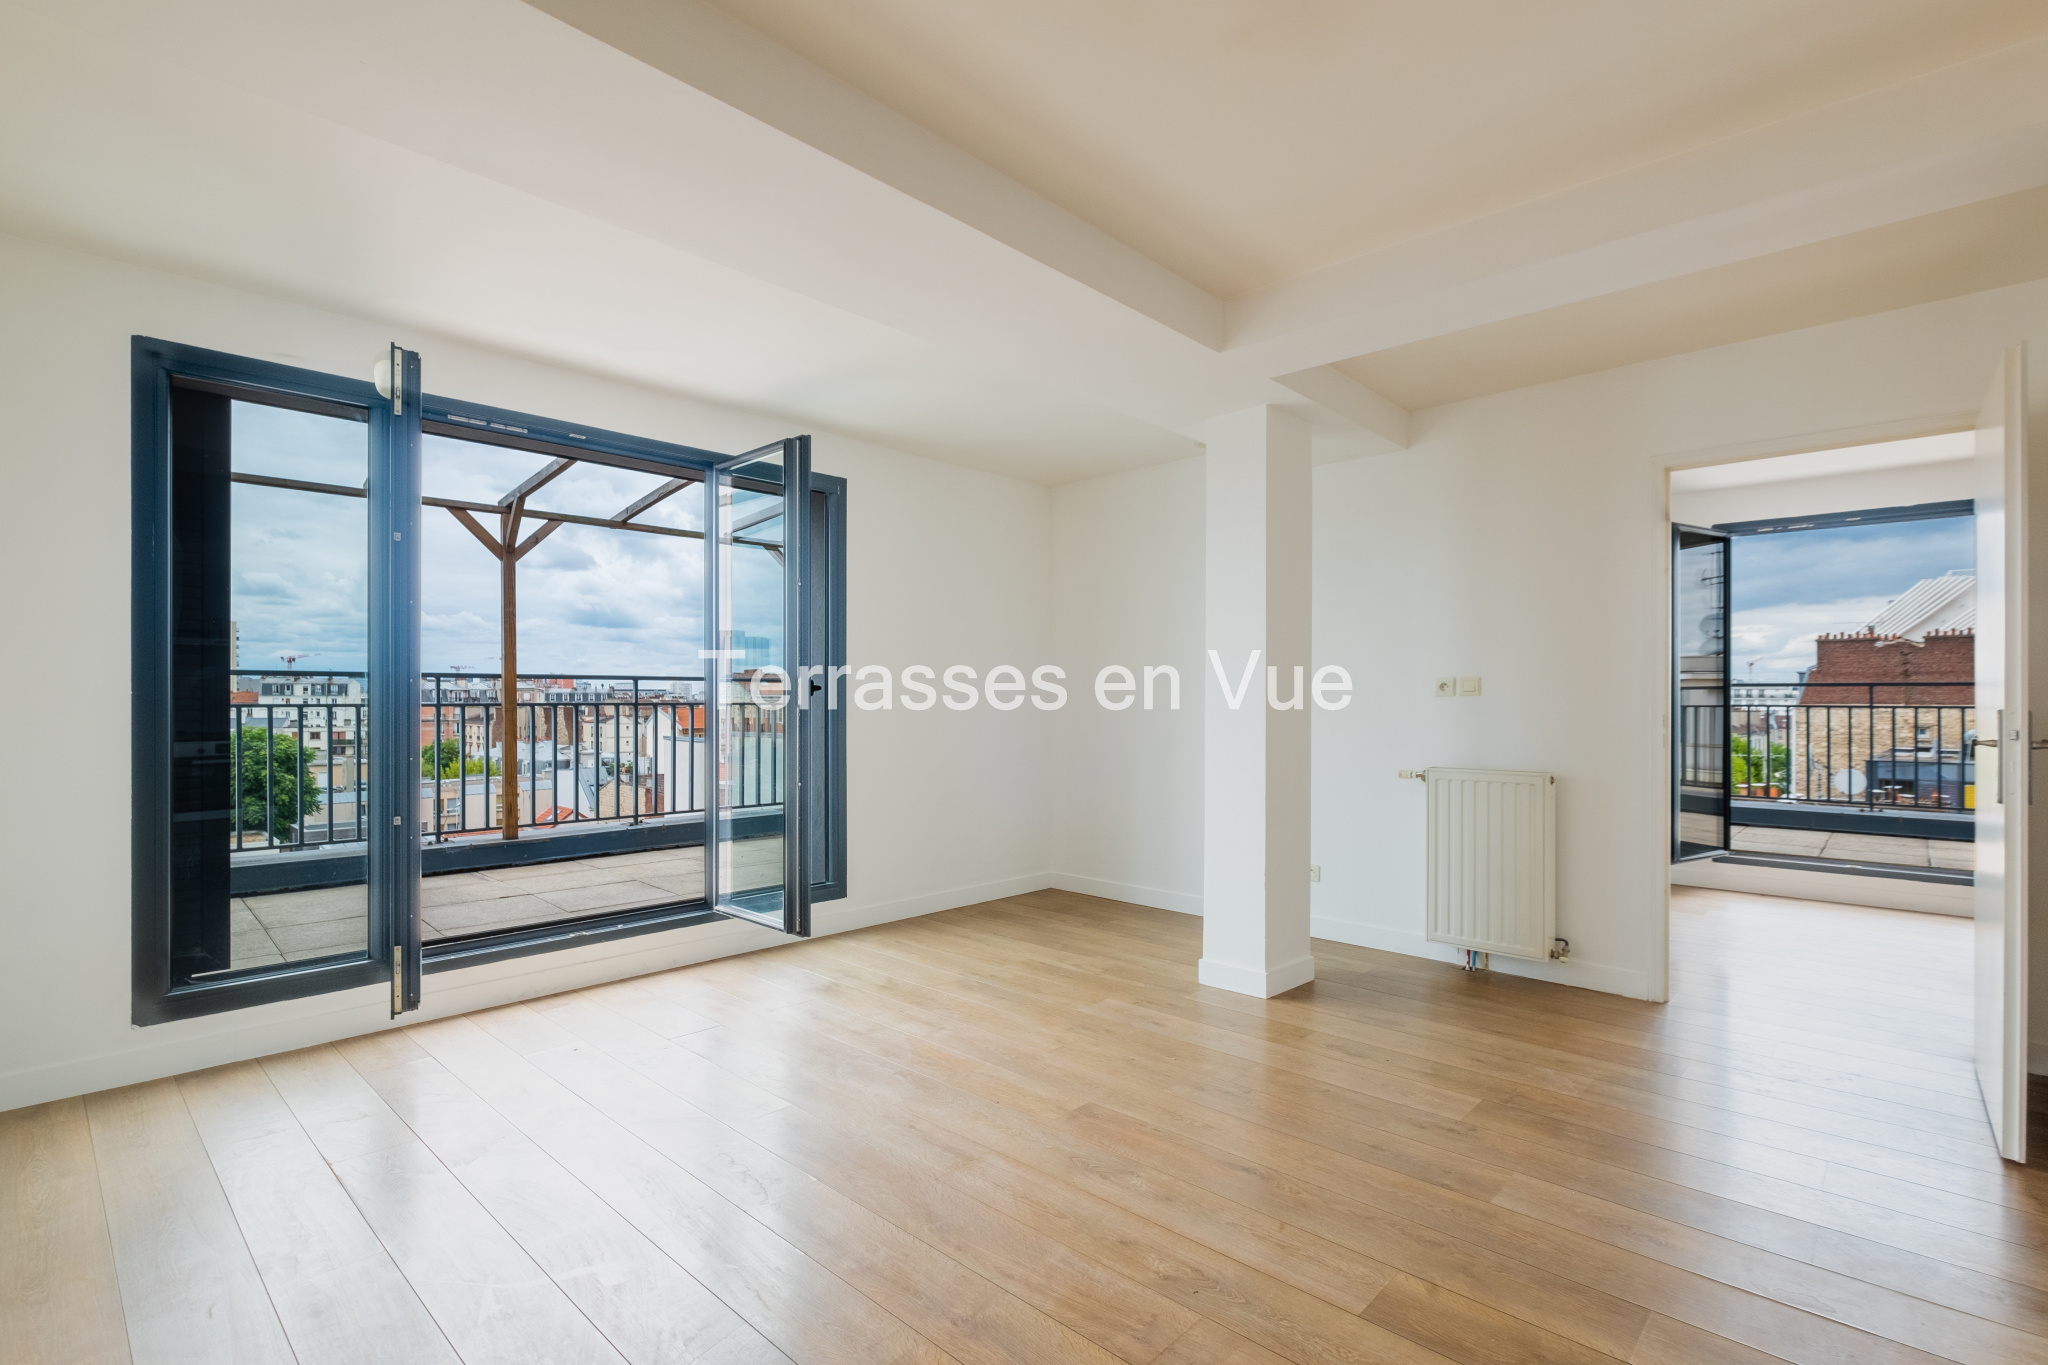 Apartment for sale - Saint-Ouen-sur-Seine / 93400